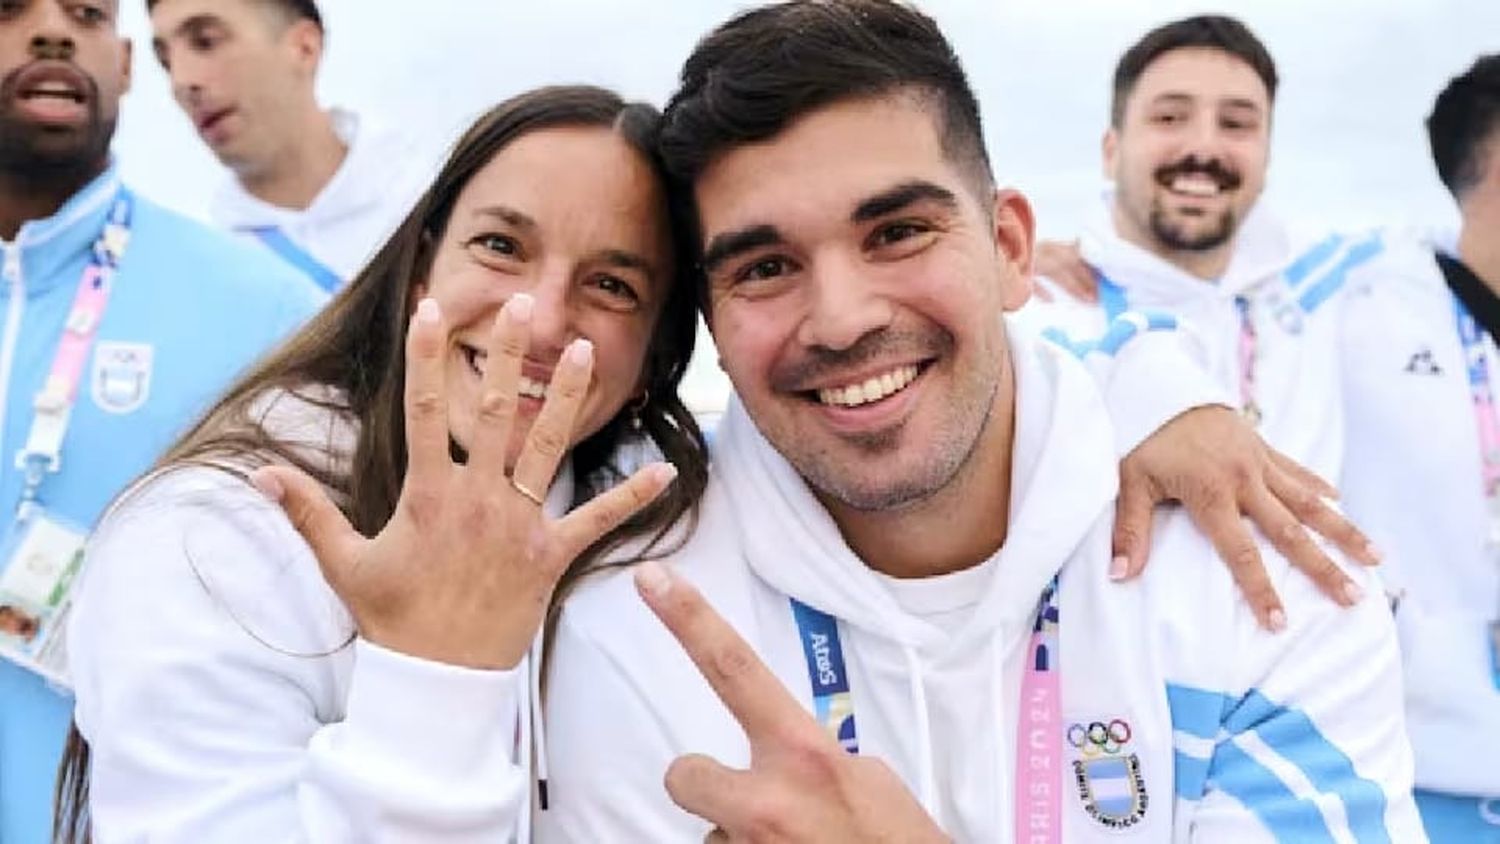 La romántica propuesta de casamiento en la delegación argentina en los Juegos Olímpicos